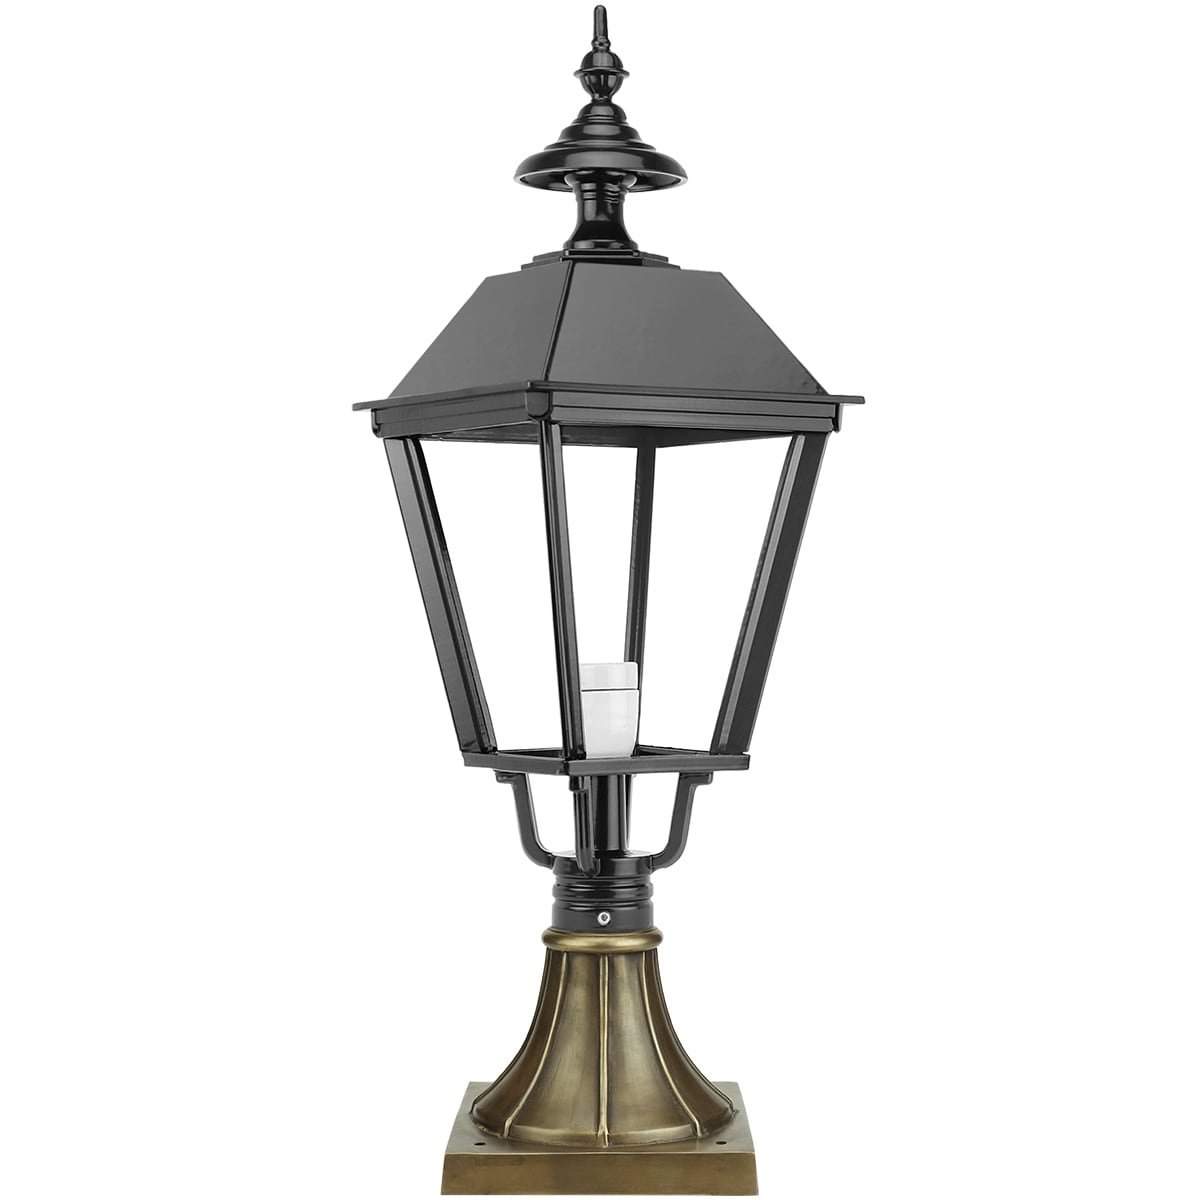 Buitenverlichting Klassiek Nostalgisch Sokkellamp Eexterveen brons - 77 cm